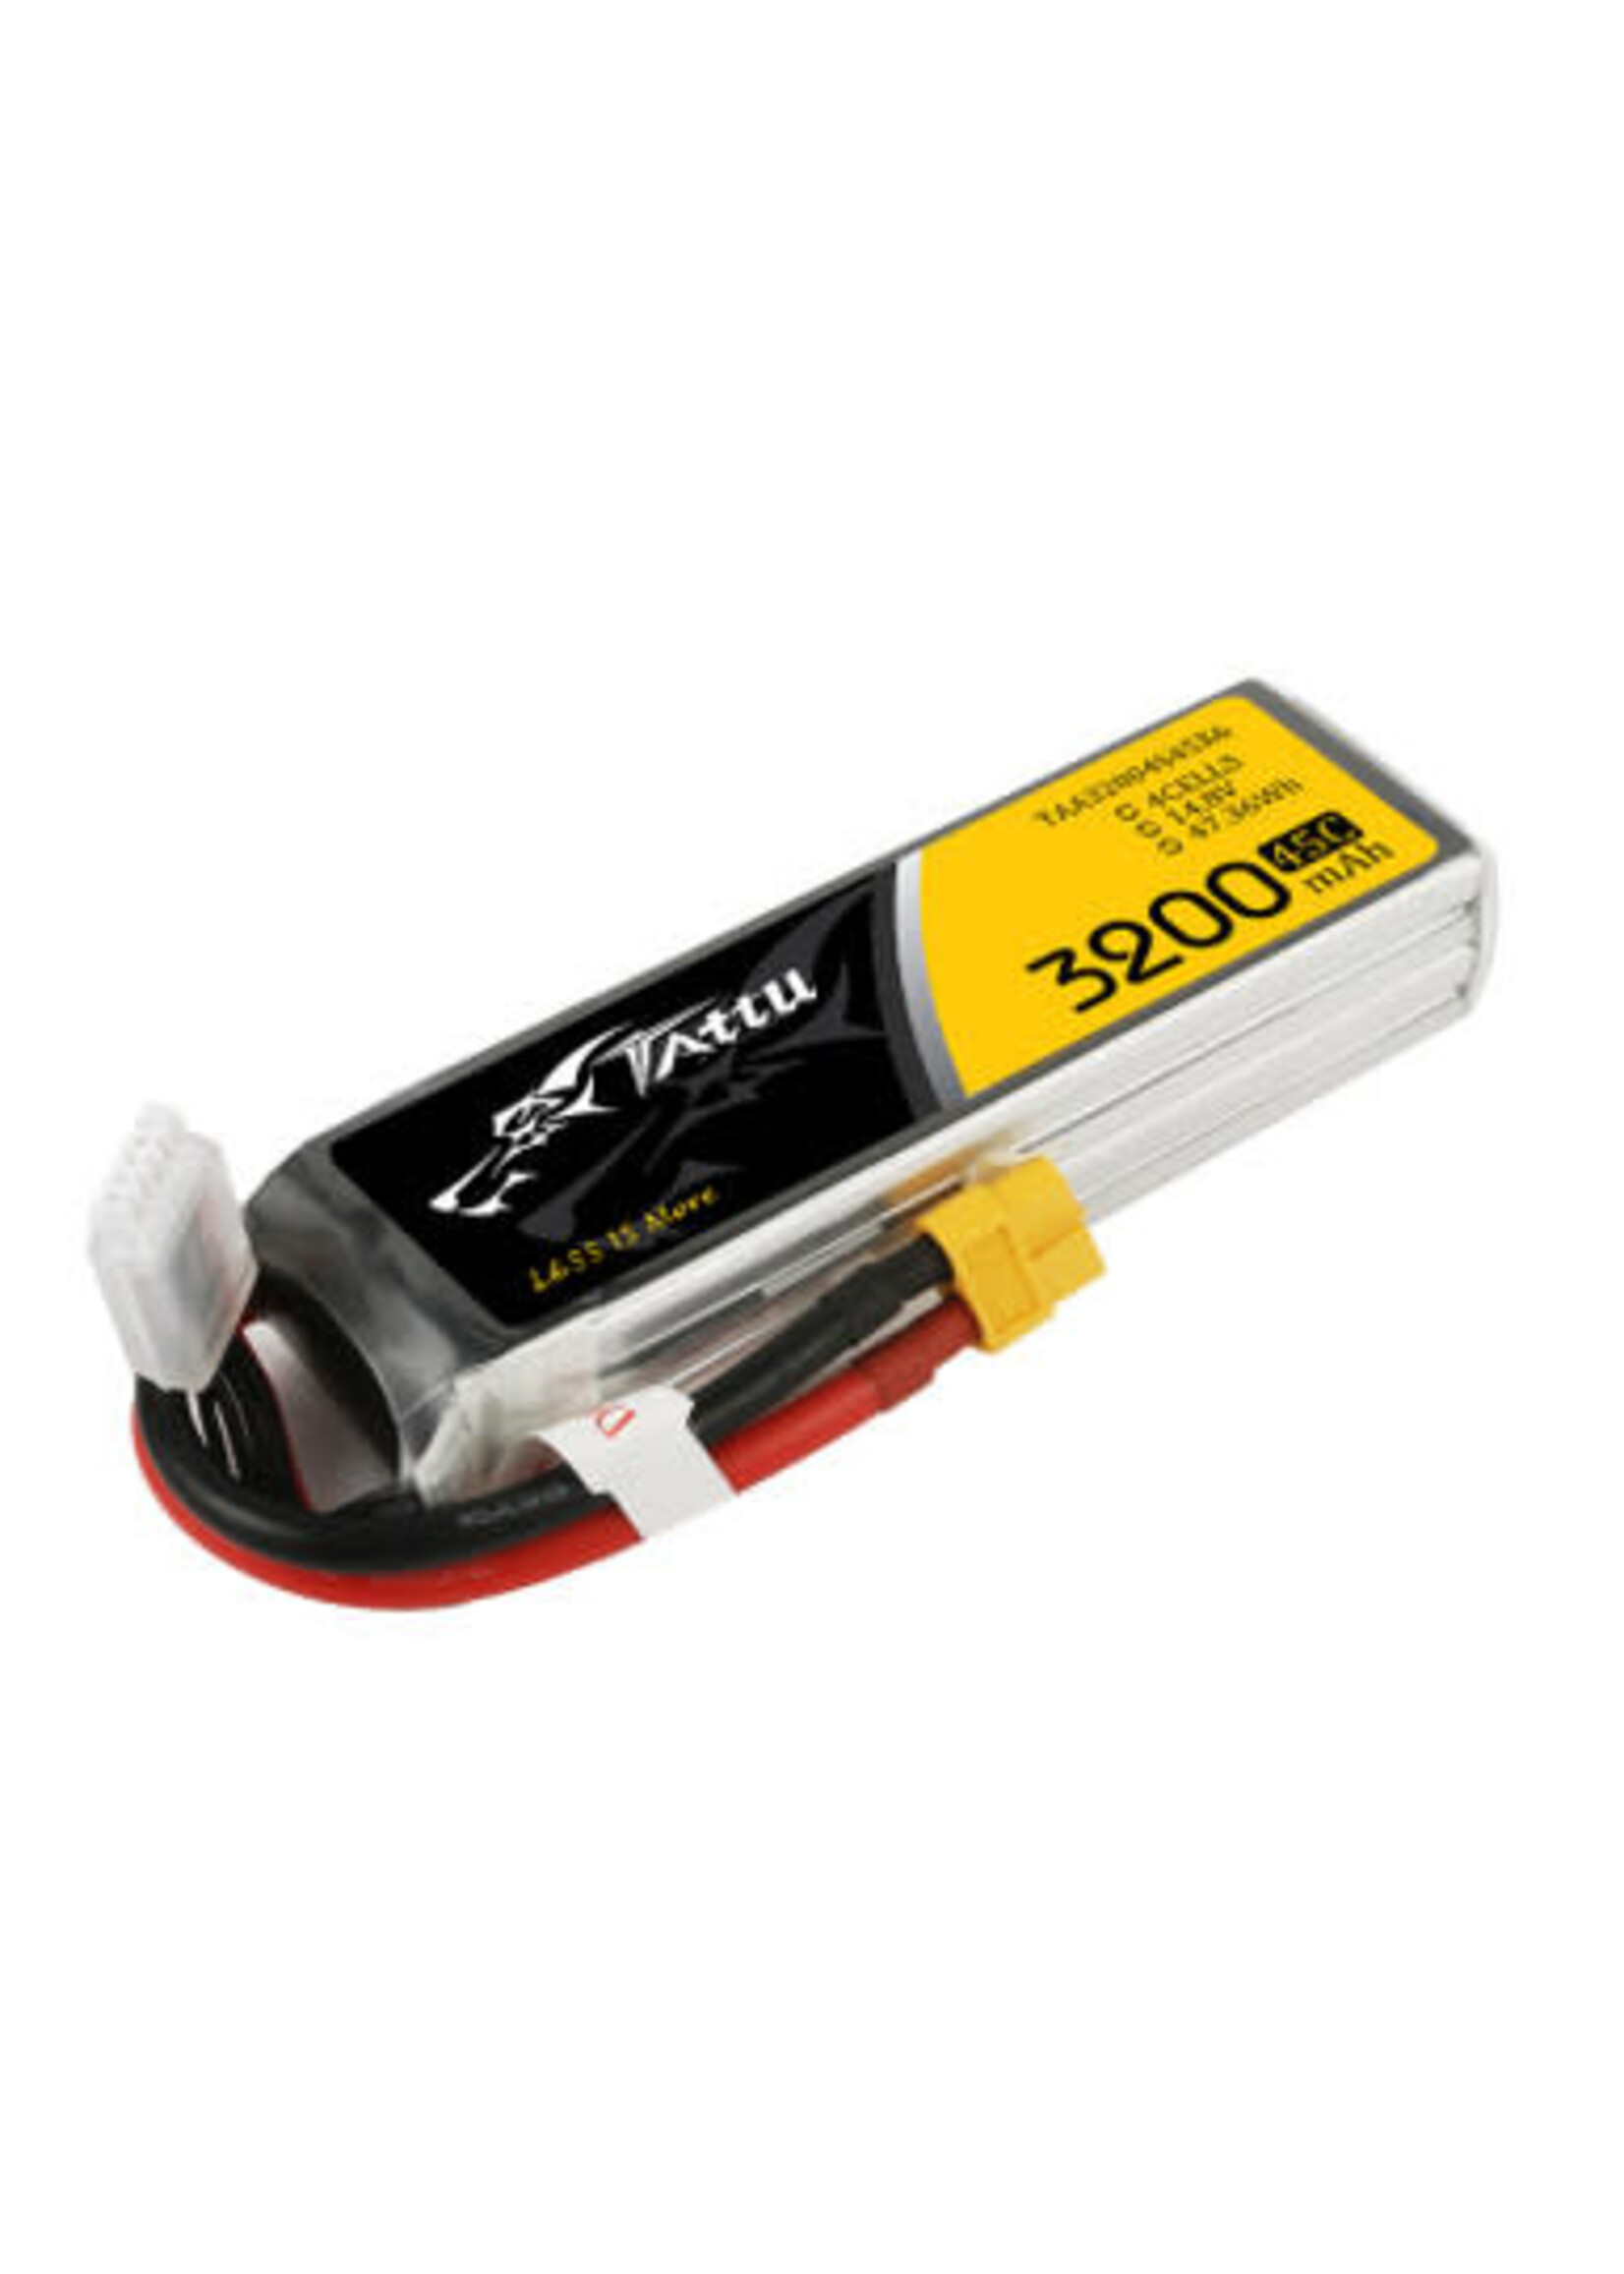 Gens ace Tattu 3200mAh 45C 4S1P Lipo Battery Pack with XT60 Plug